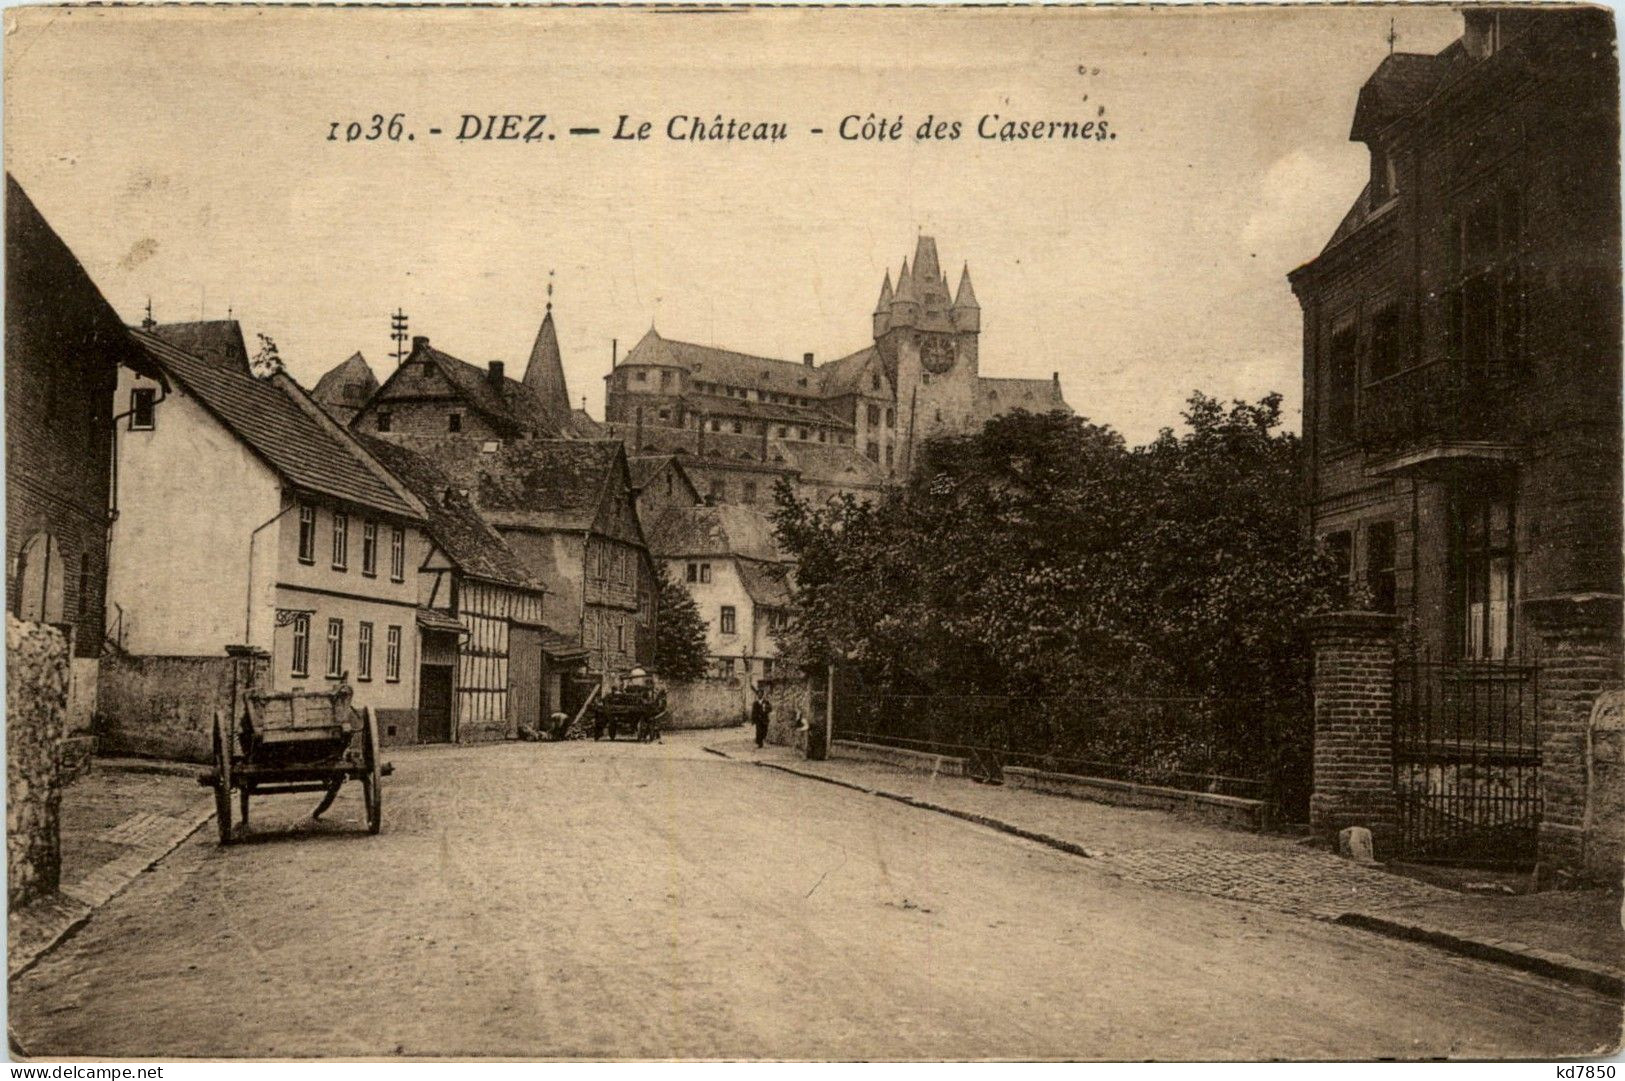 Diez An Der Lahn - Le Chateau - Diez